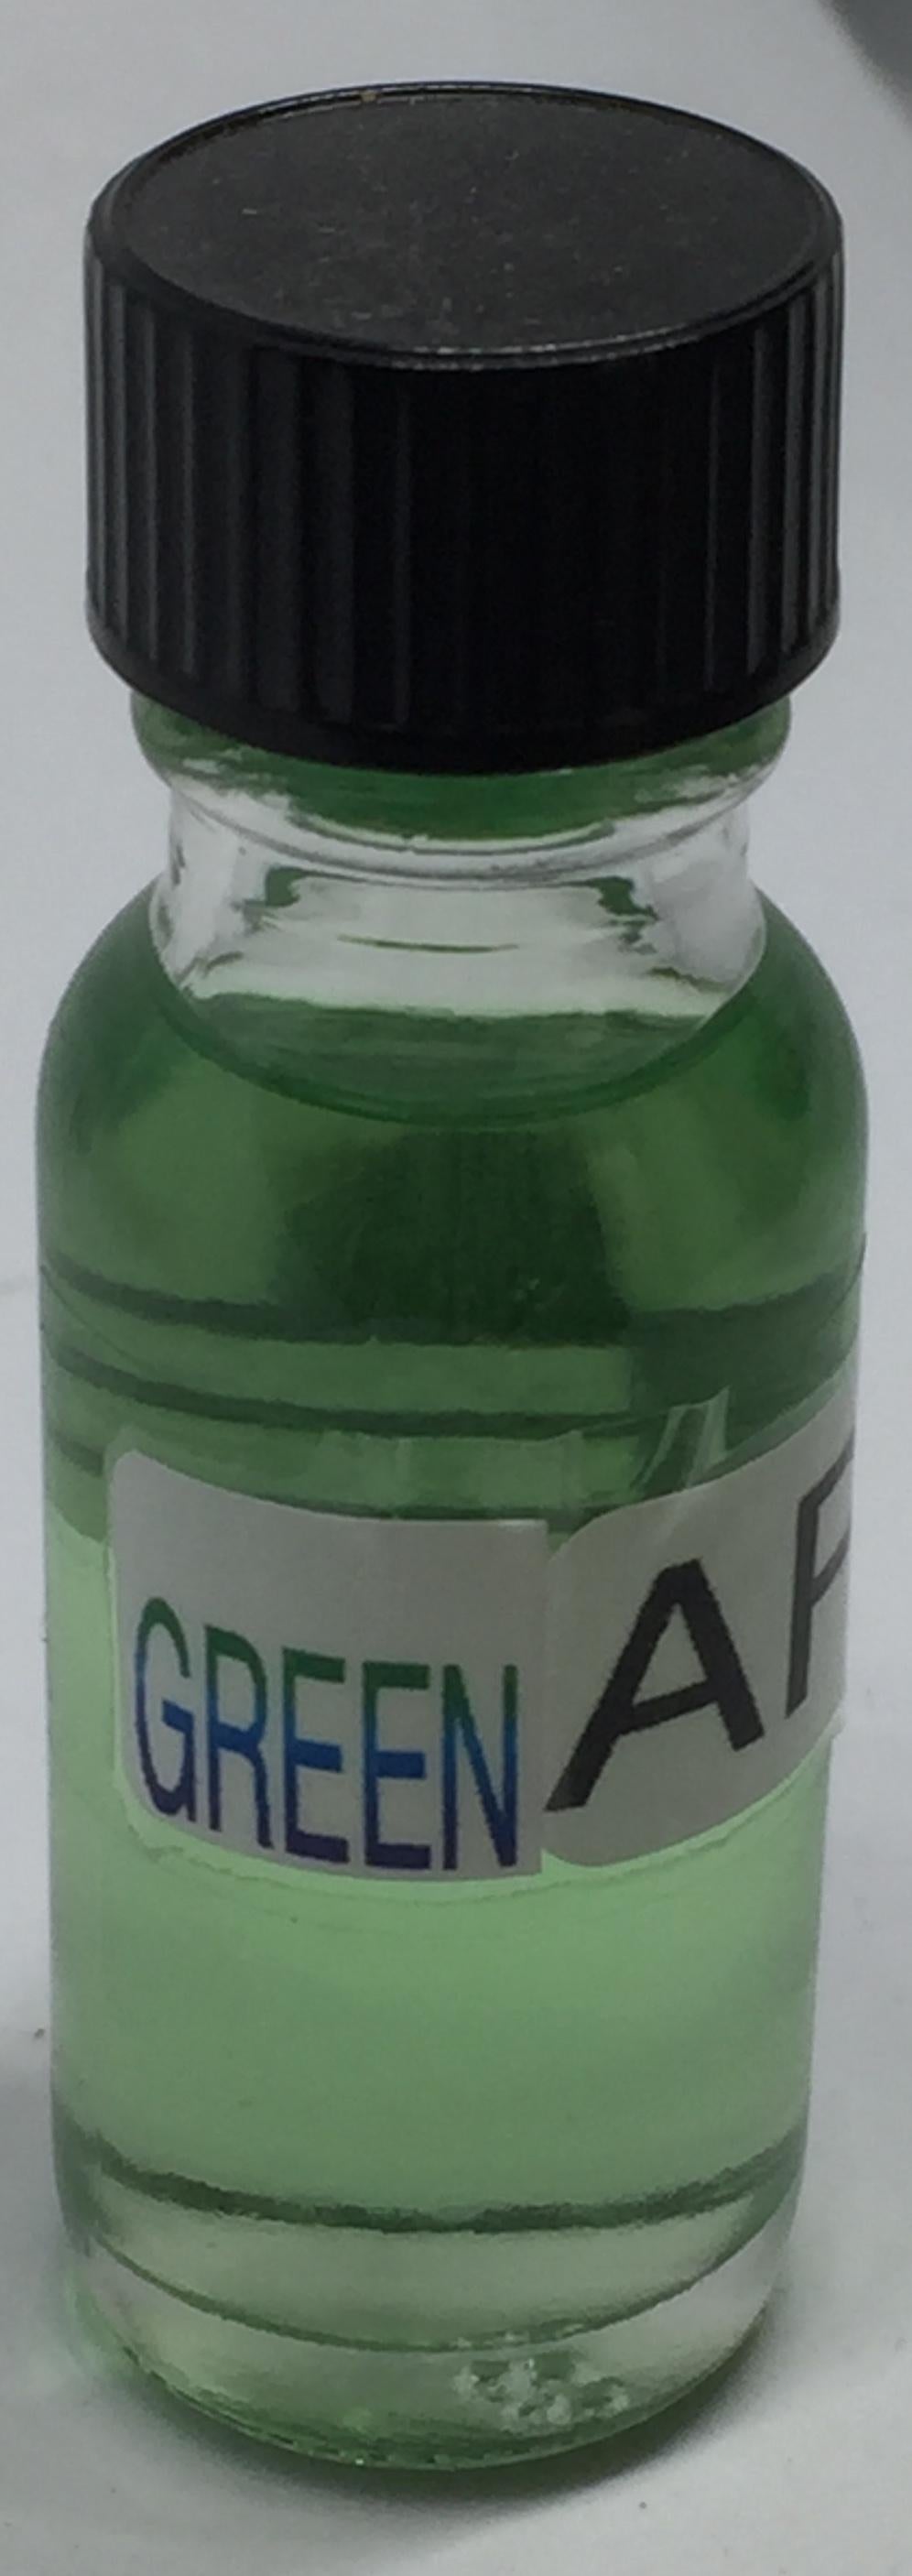 Green Apple Fragrance Burning Oil